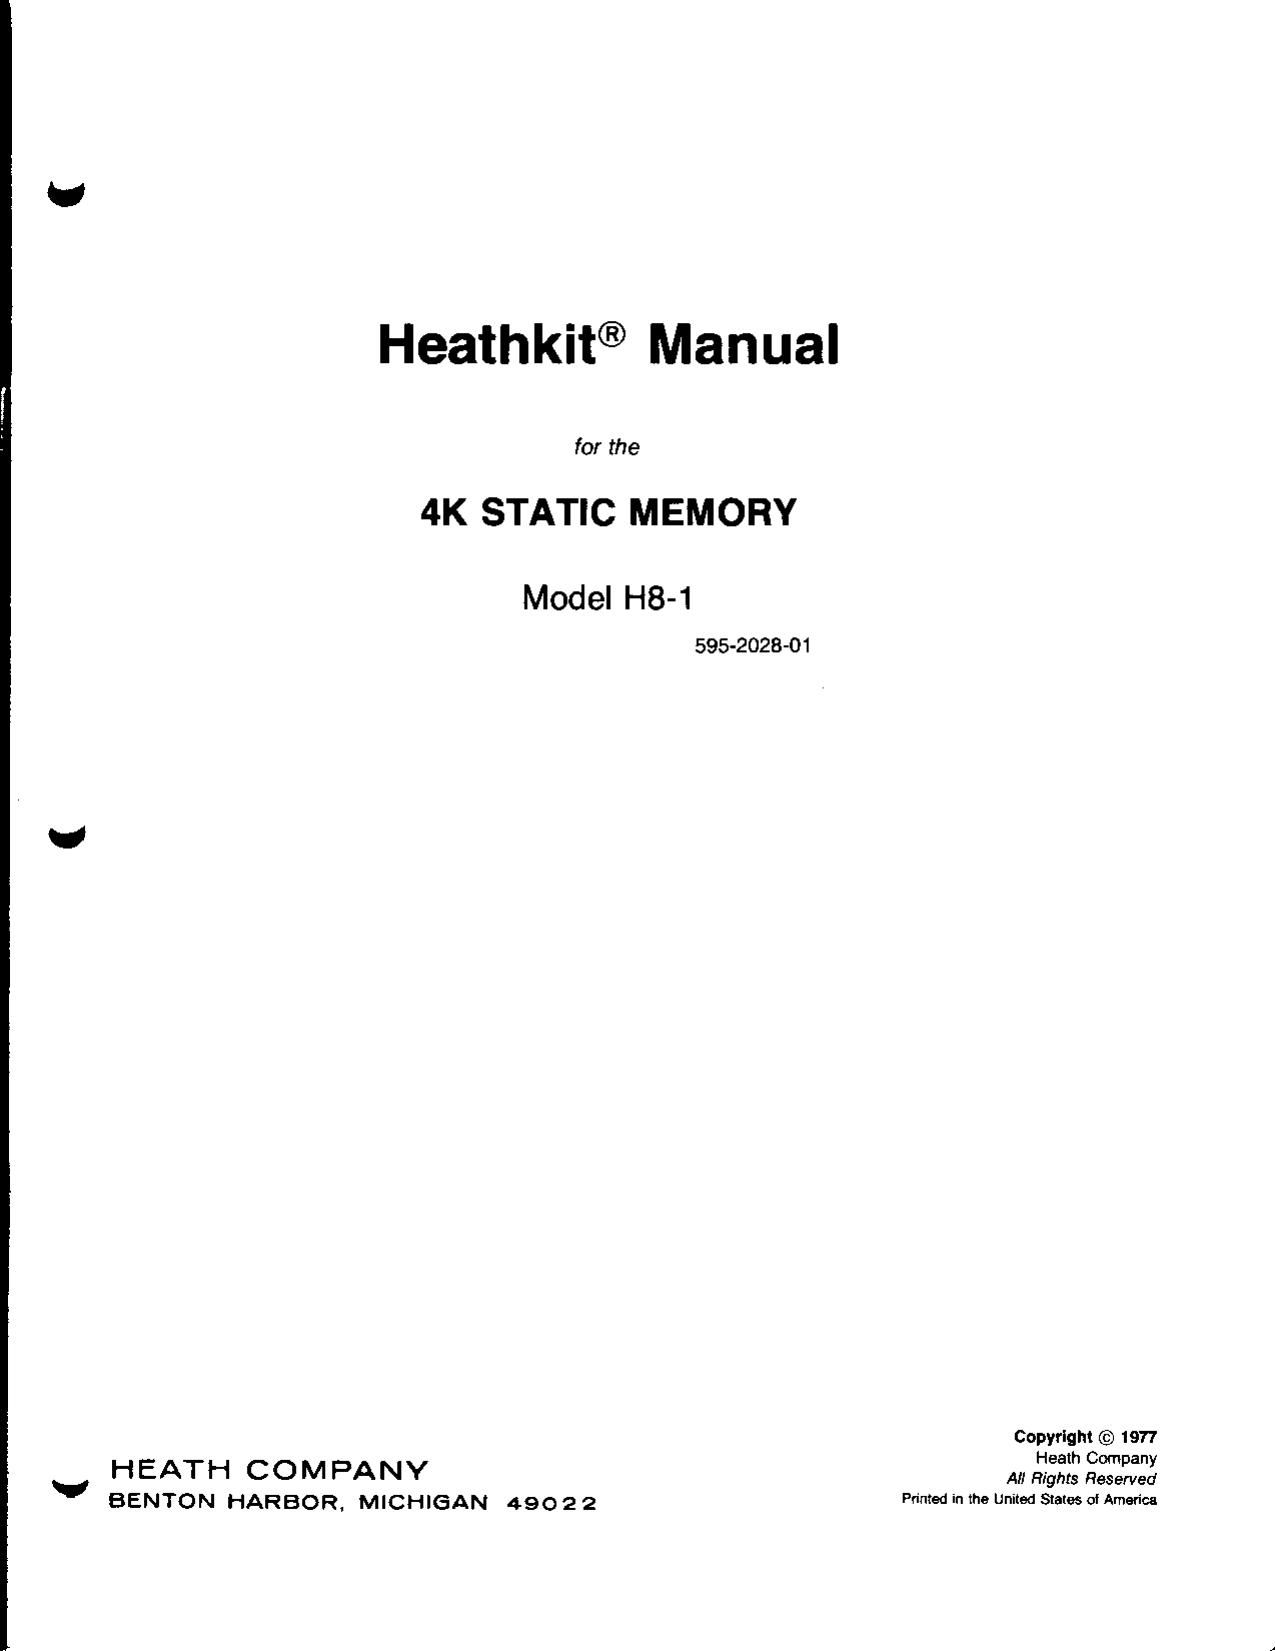 Heathkit H 8 1 Manual